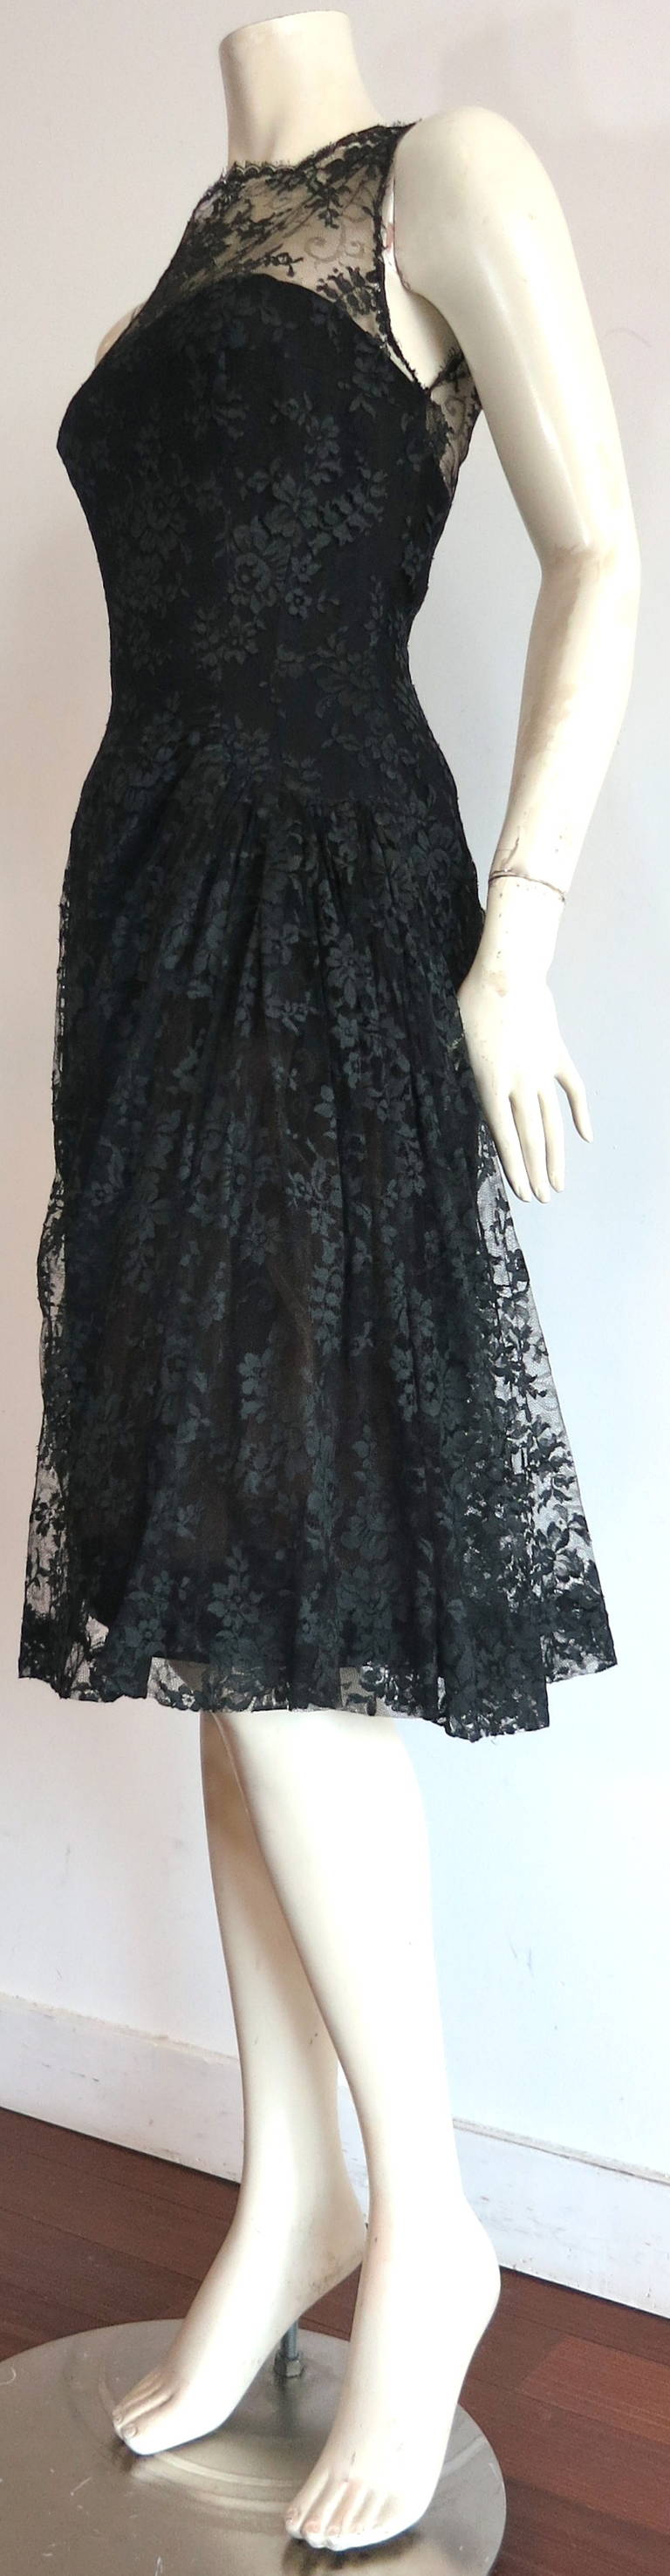 Vintage LUIS ESTEVEZ Chantilly lace cocktail dress For Sale 3